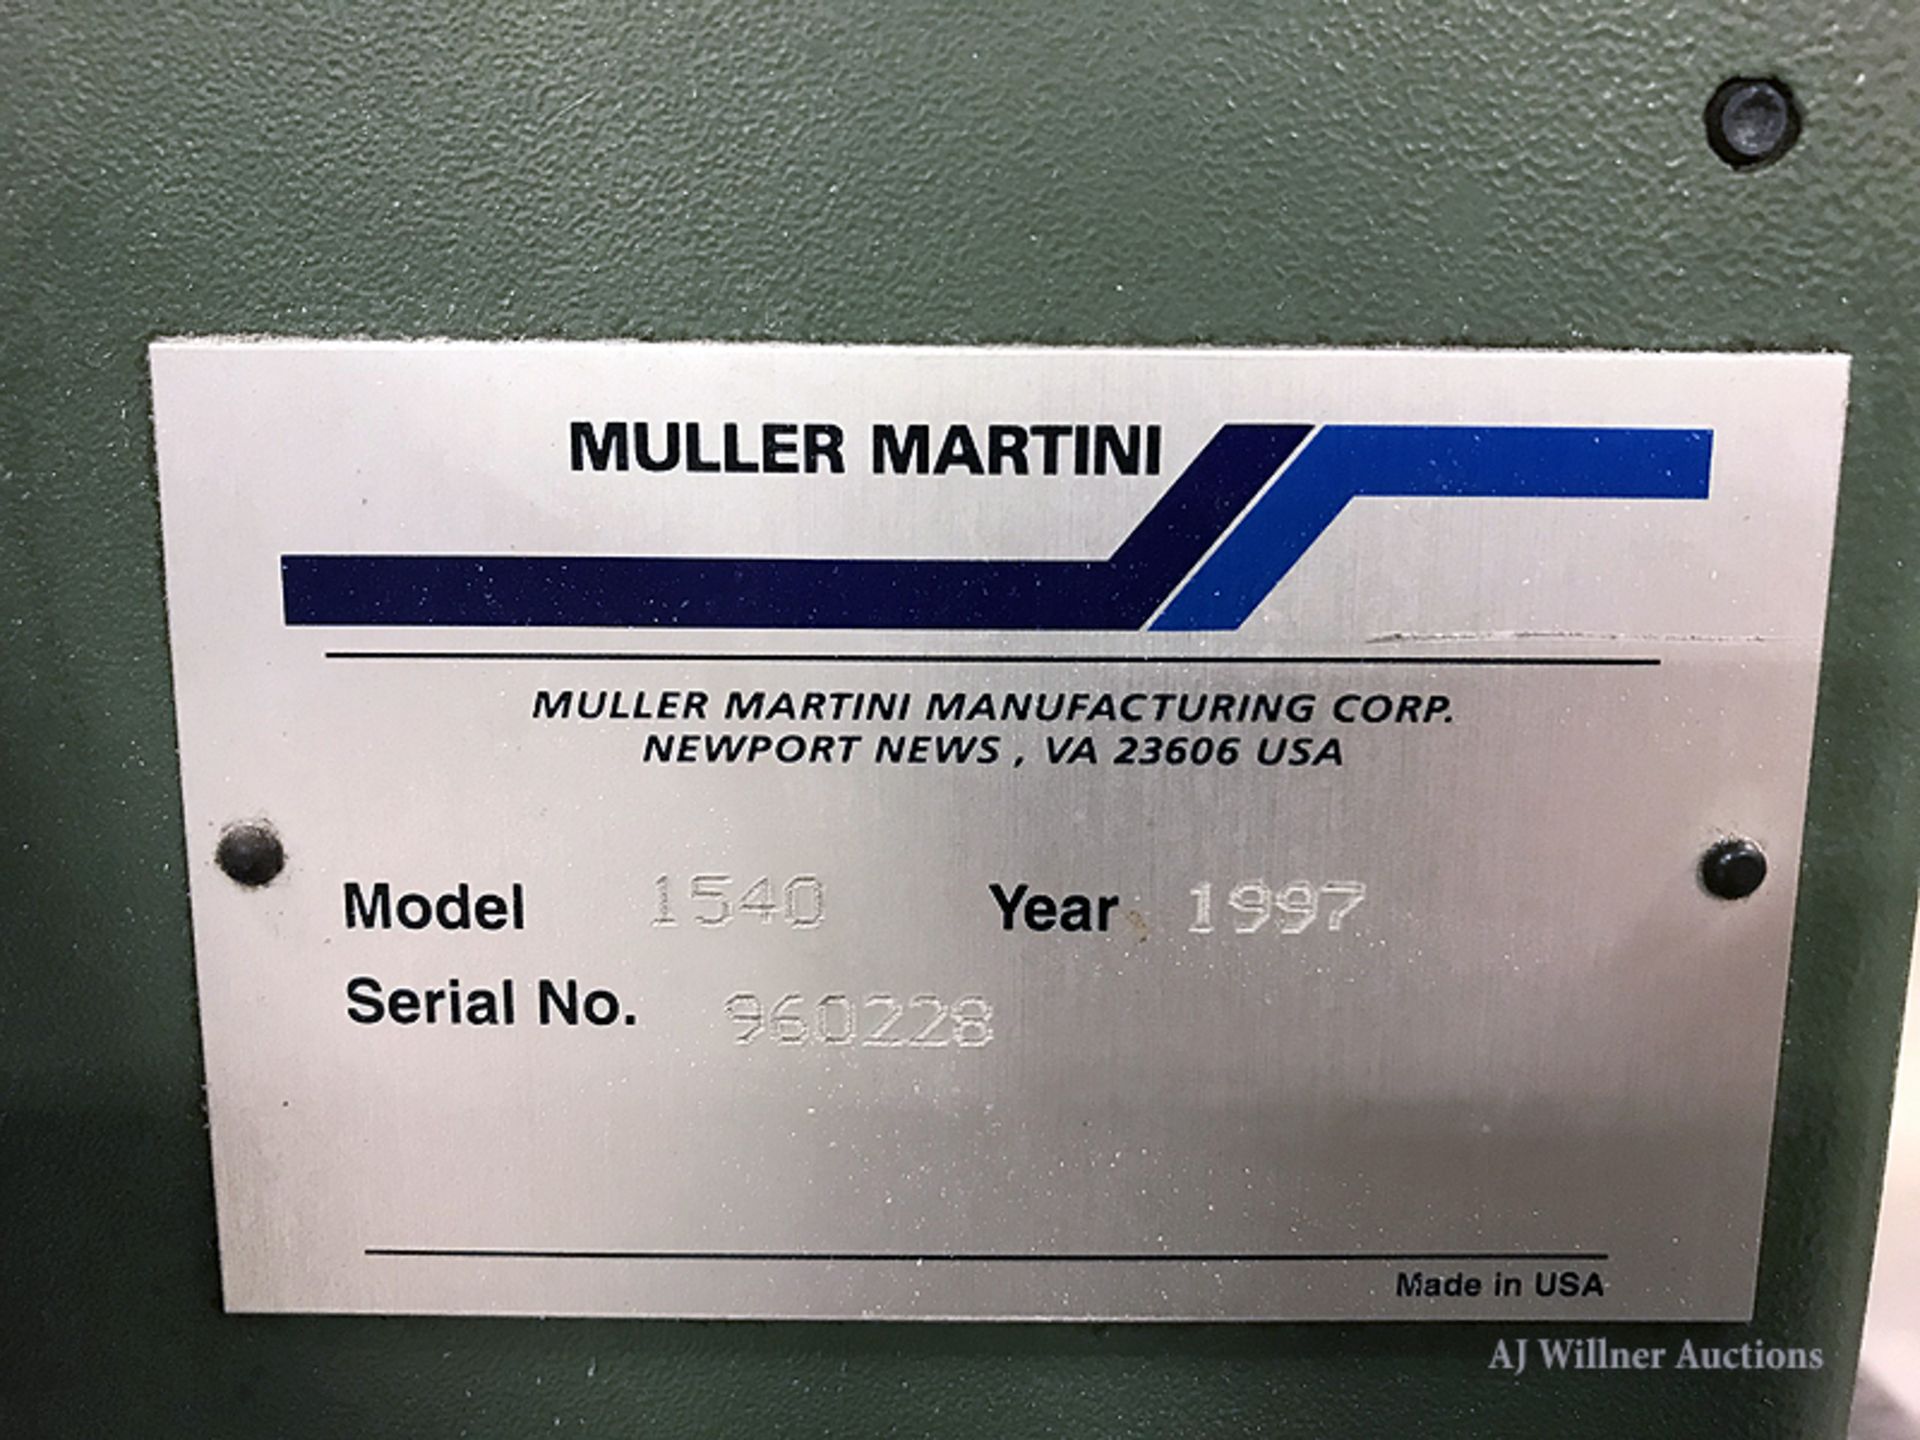 Muller Martini Apollo Model 1540 Counter Stacker - Image 4 of 4